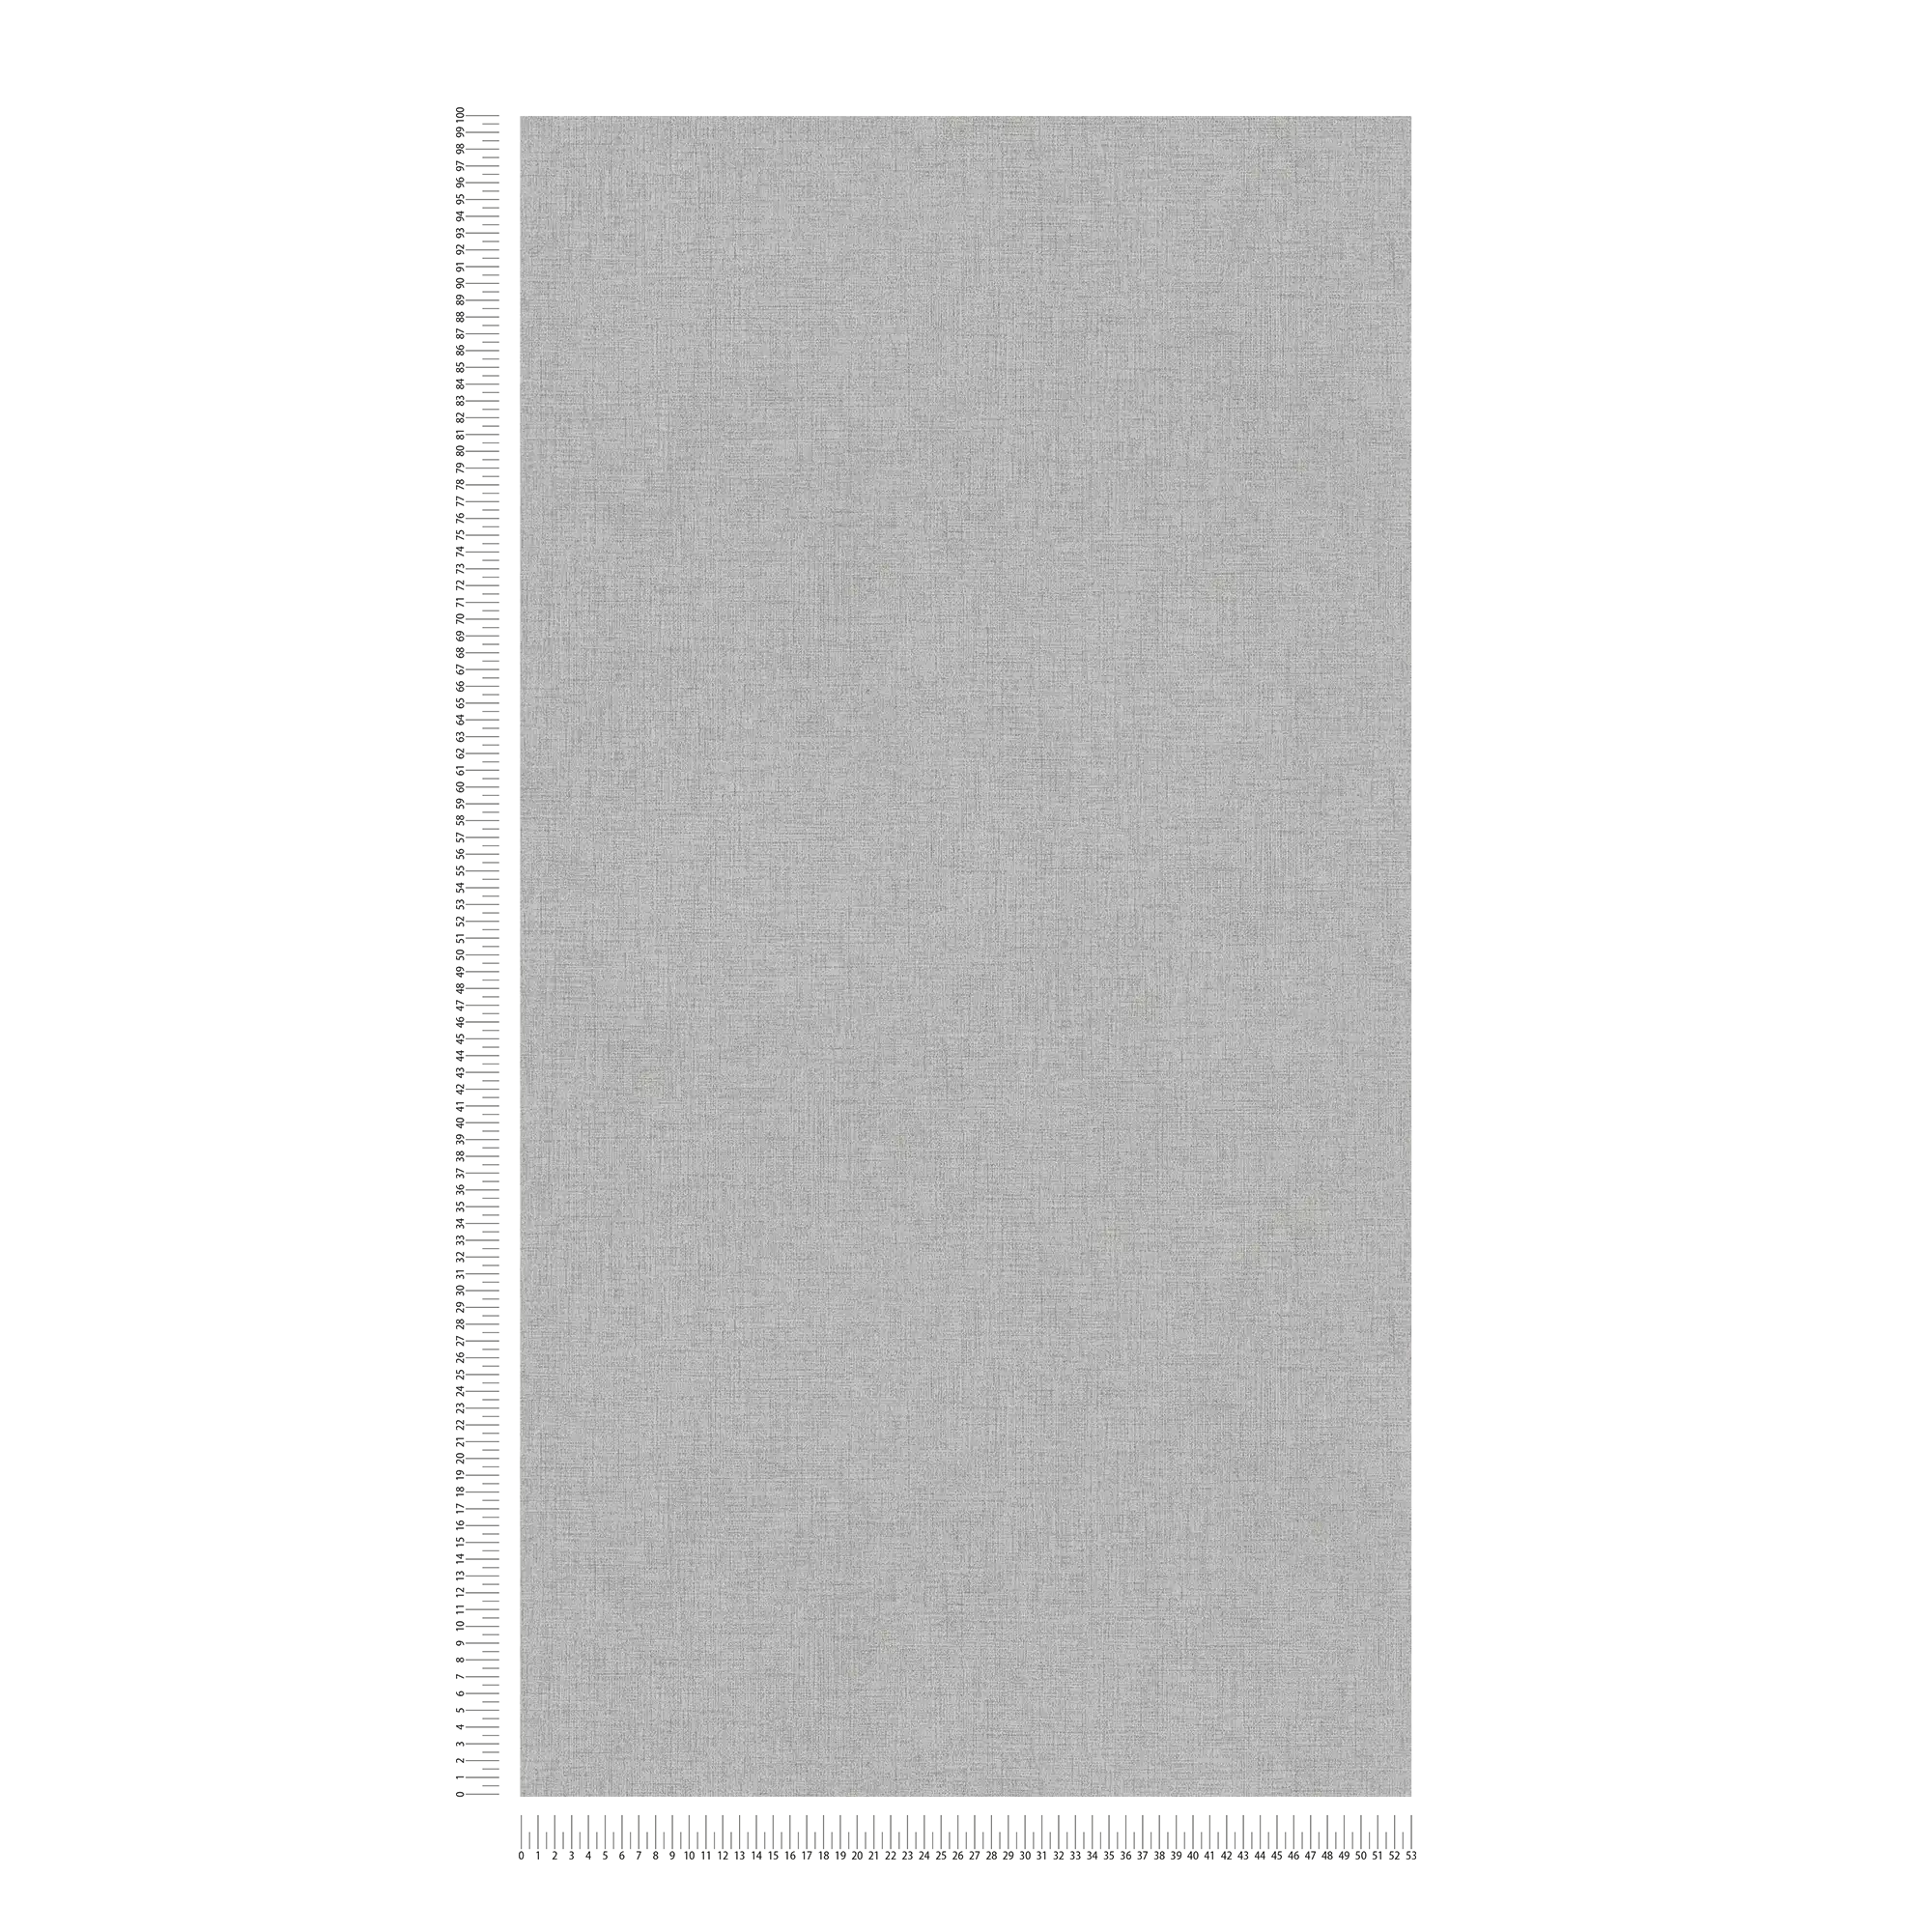             Papier peint uni avec aspect lin discret - Gris
        